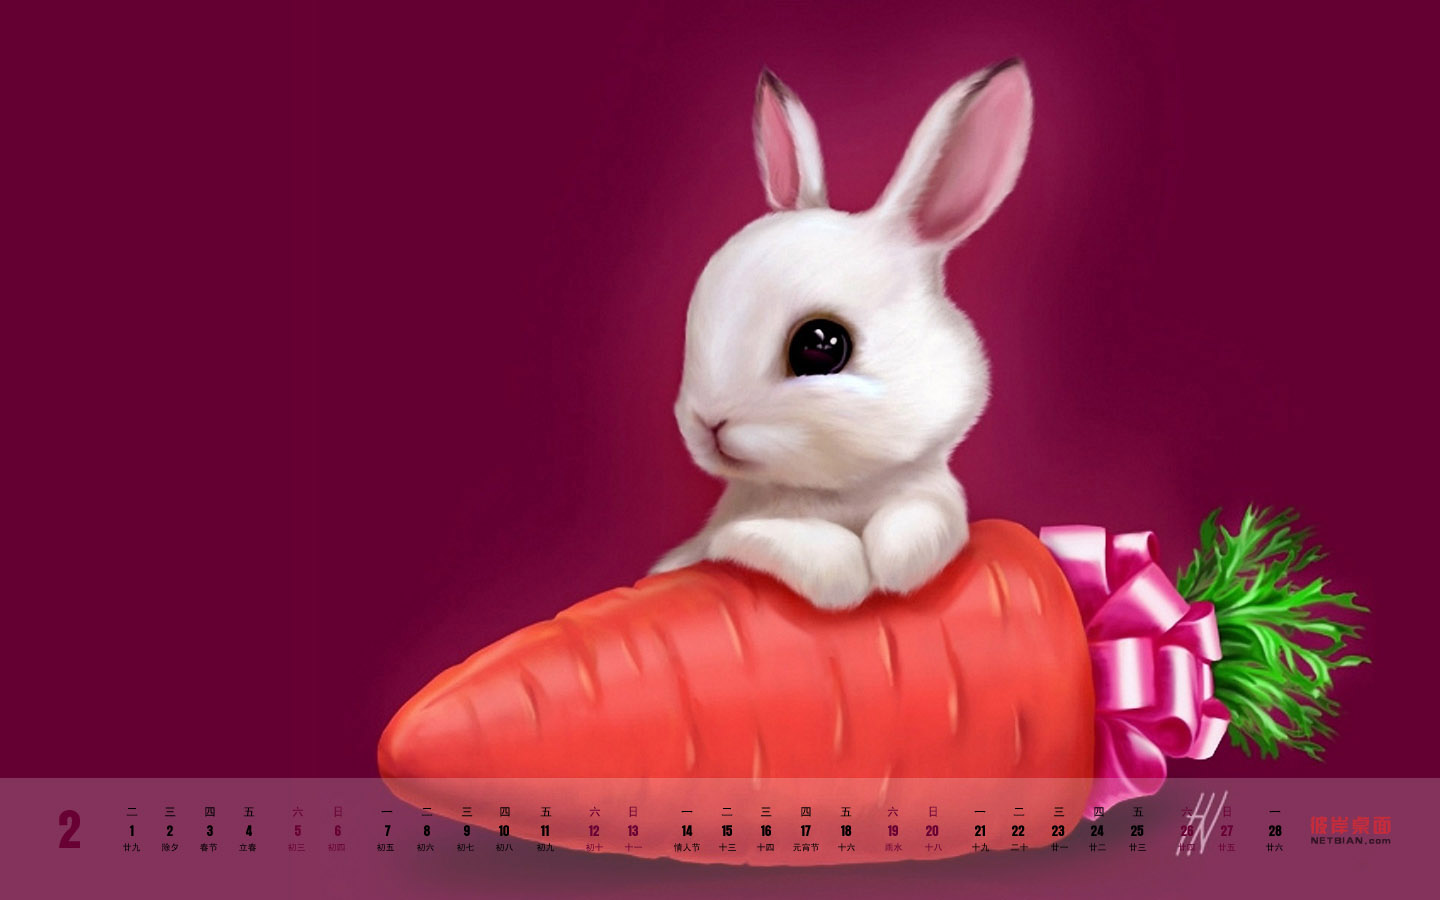 Lucky Year of the Rabbit February 2011 Calendar Desktop Wallpaper